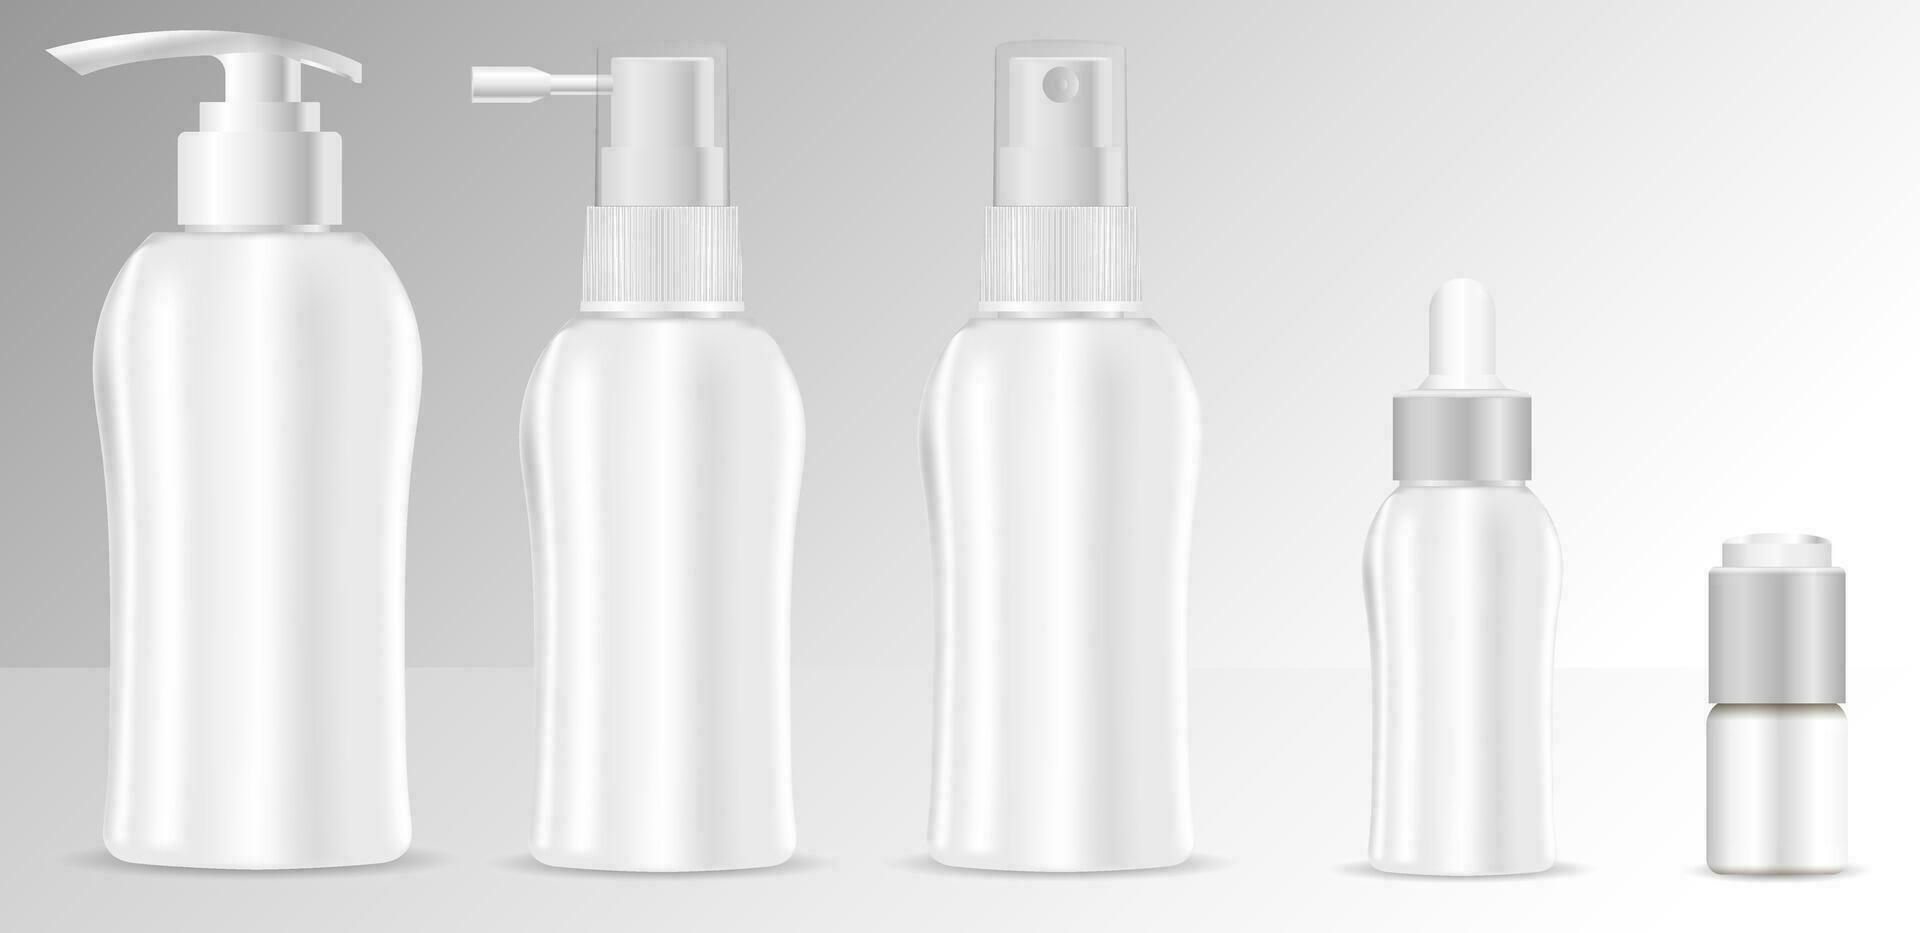 réaliste 3d maquette de cosmétique emballer. vecteur Vide modèles ensemble de vide et nettoyer blanc Plastique conteneurs bouteilles avec vaporisateur, distributeur et compte-gouttes, crème pot.